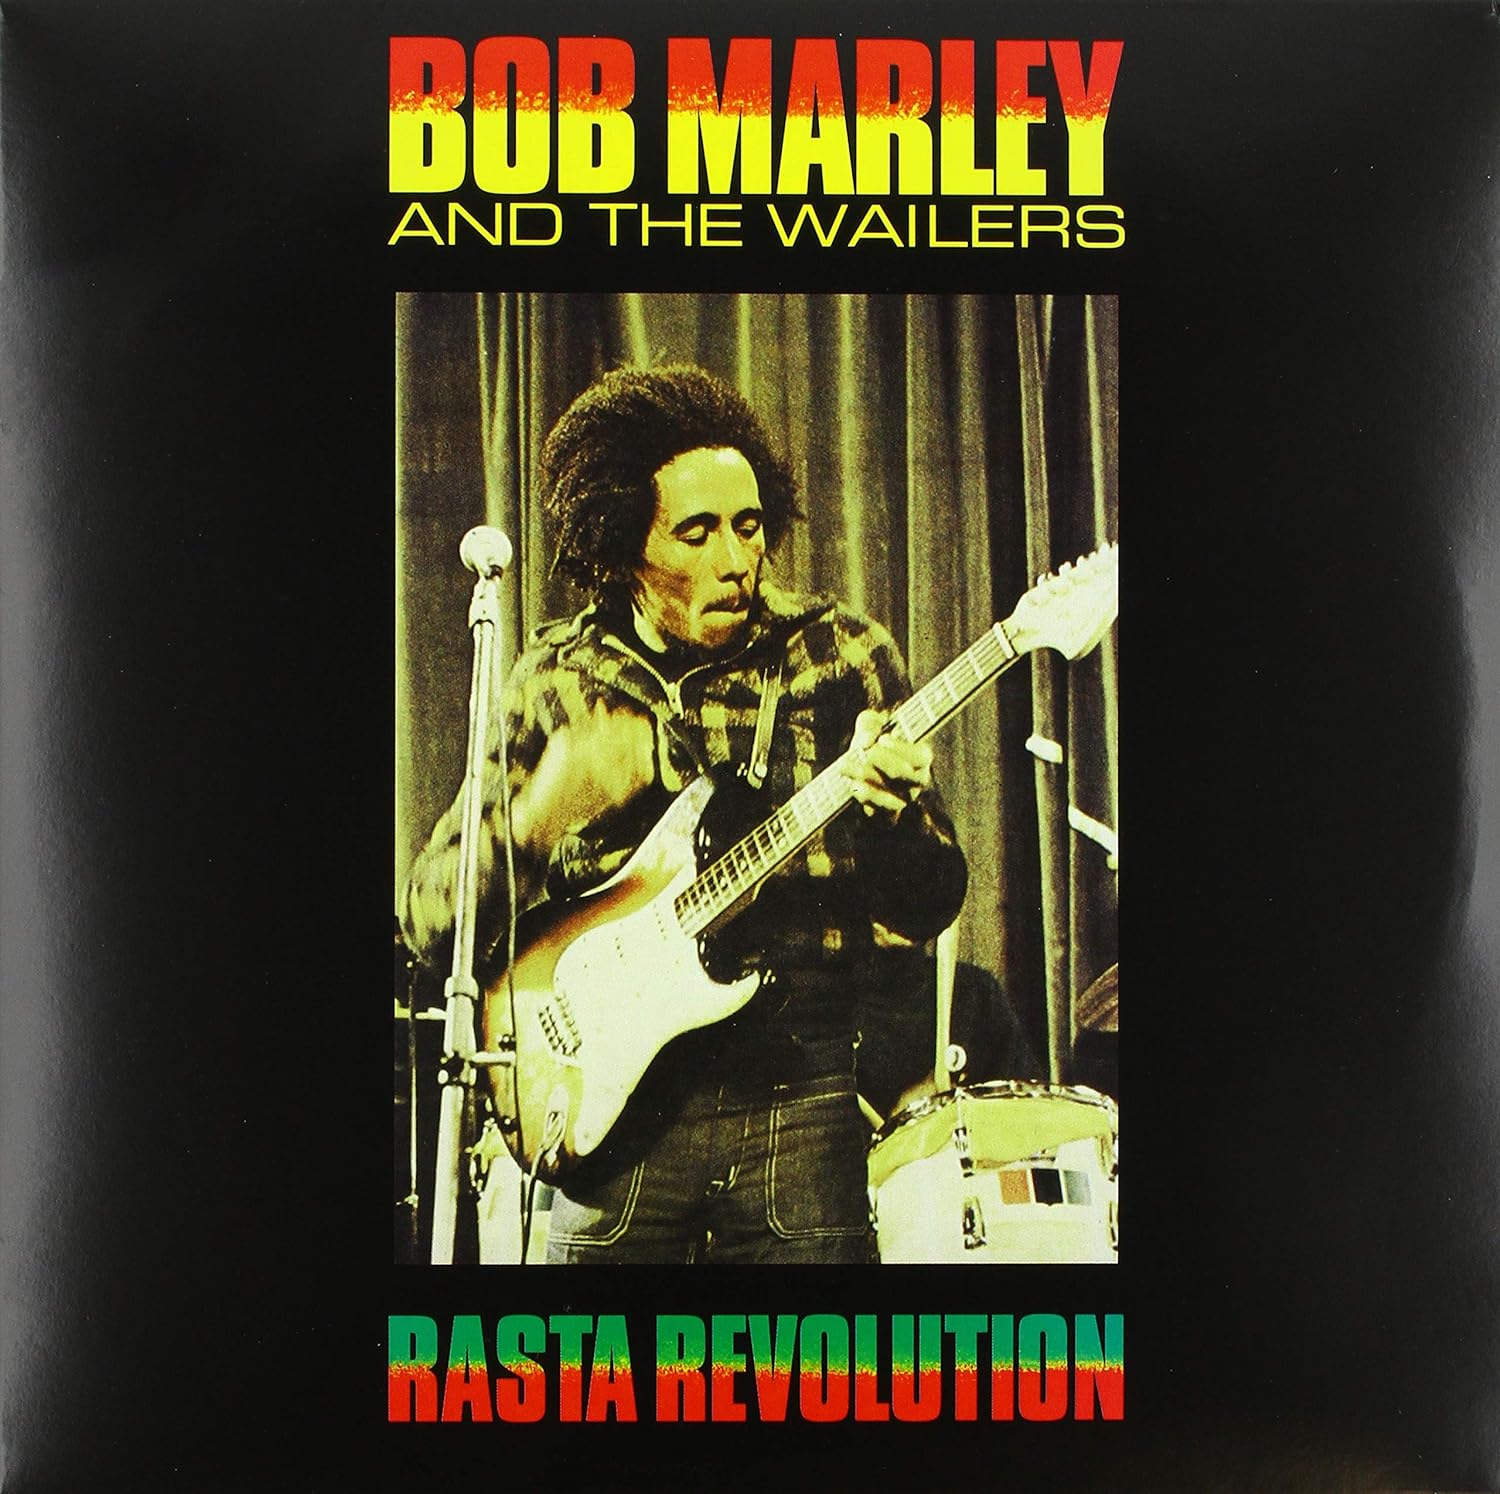 Découvrez Rasta Revolution de Bob Marley & The Wailers et bien d'album, livre, CD, DVD, bluray sur notre site web gm Éditions.